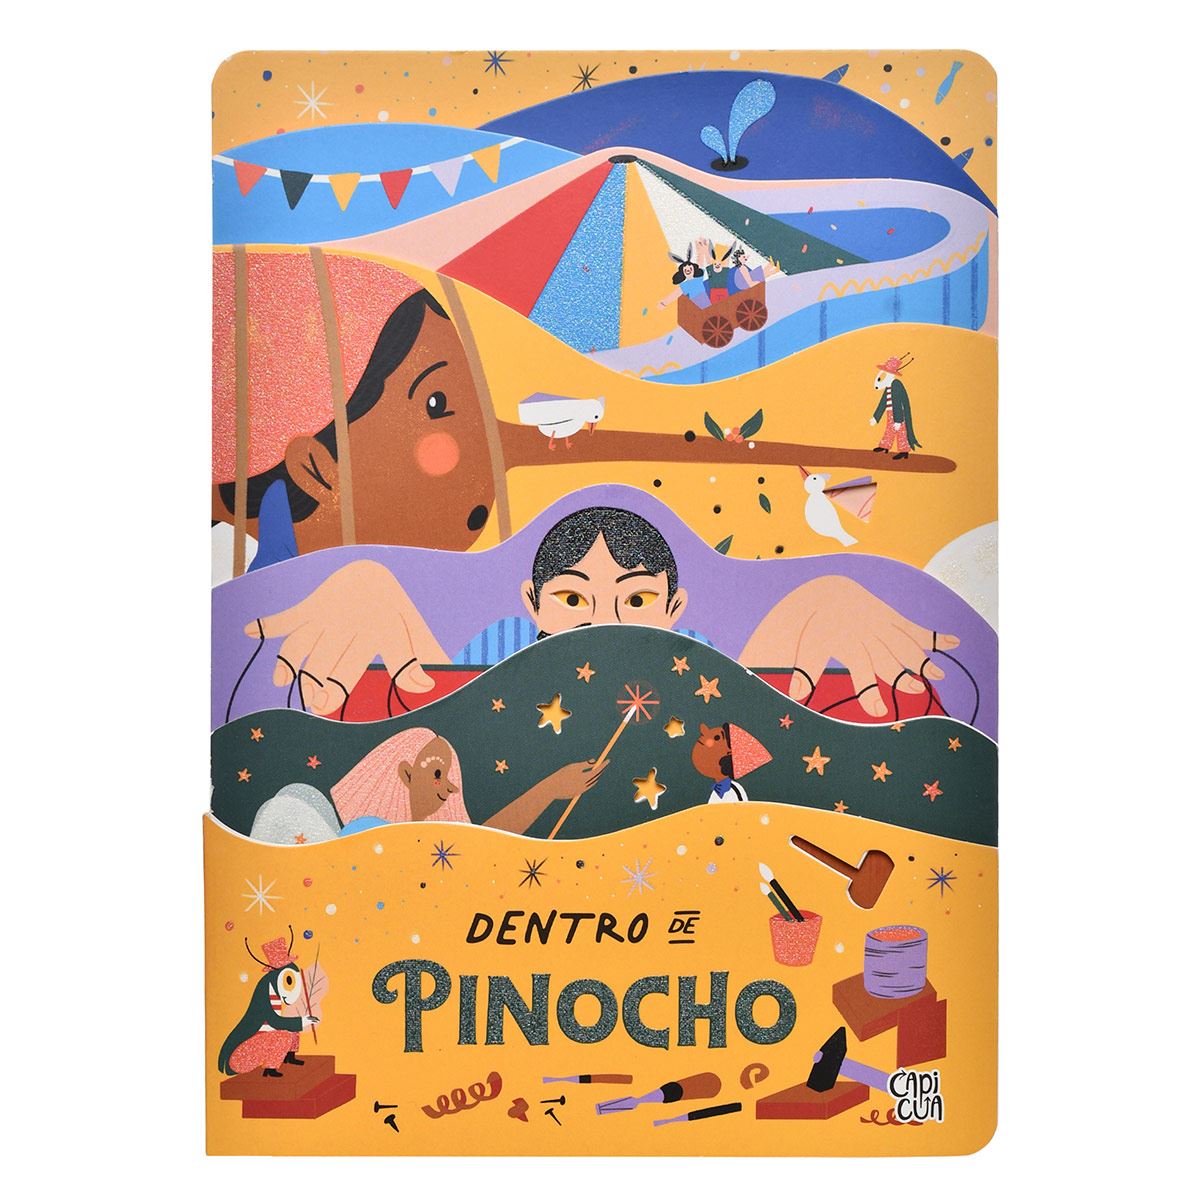 TODOS LOS CUENTOS CLÁSICOS DE DISNEY. Volumen 14: Pinocho